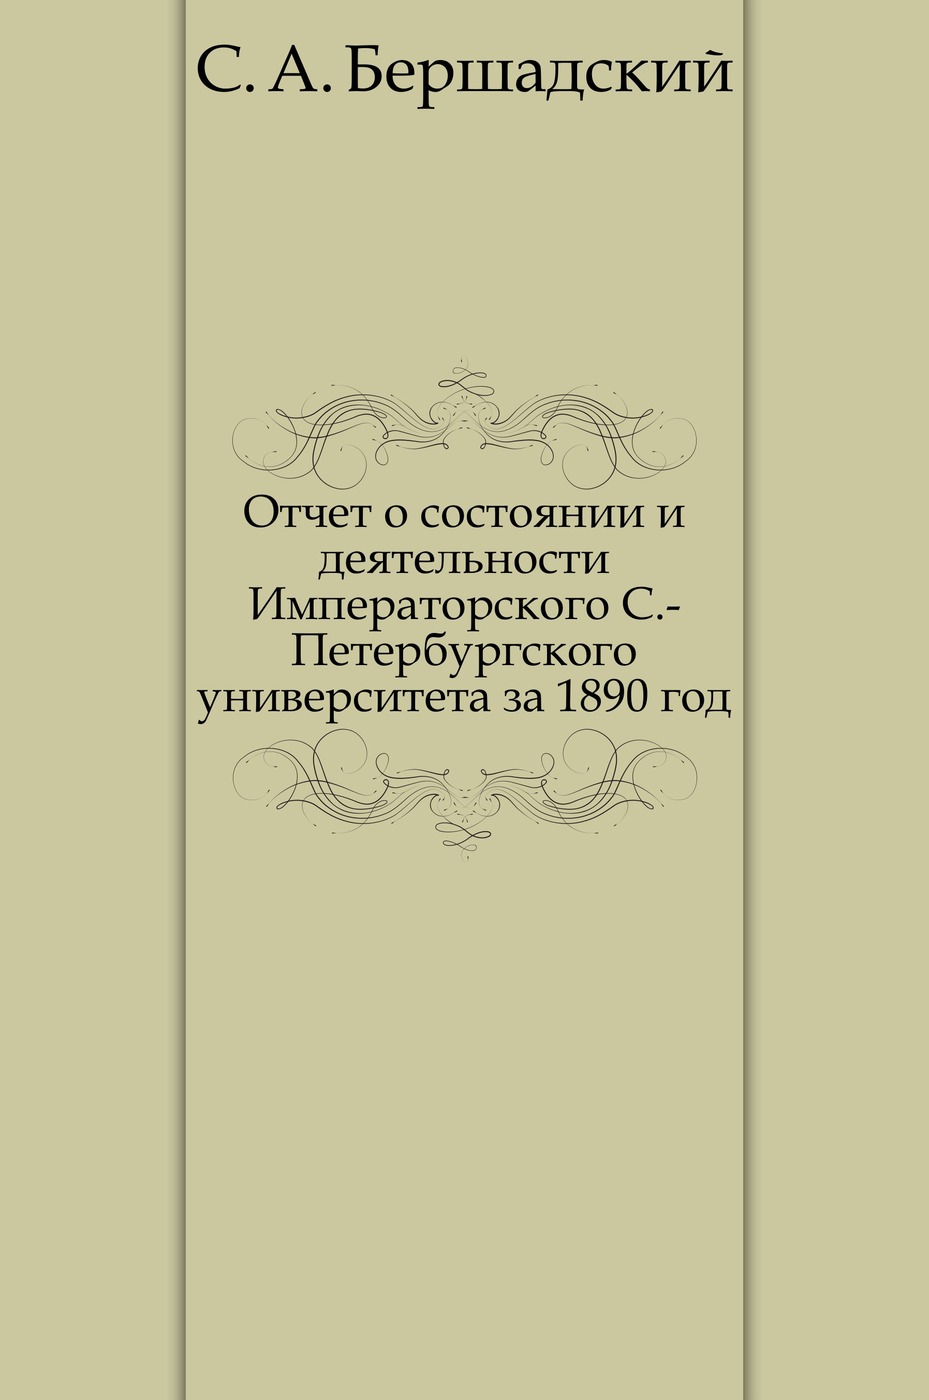 Отчет о состоянии и деятельности Императорского С.-Петербургского университета за 1890 год